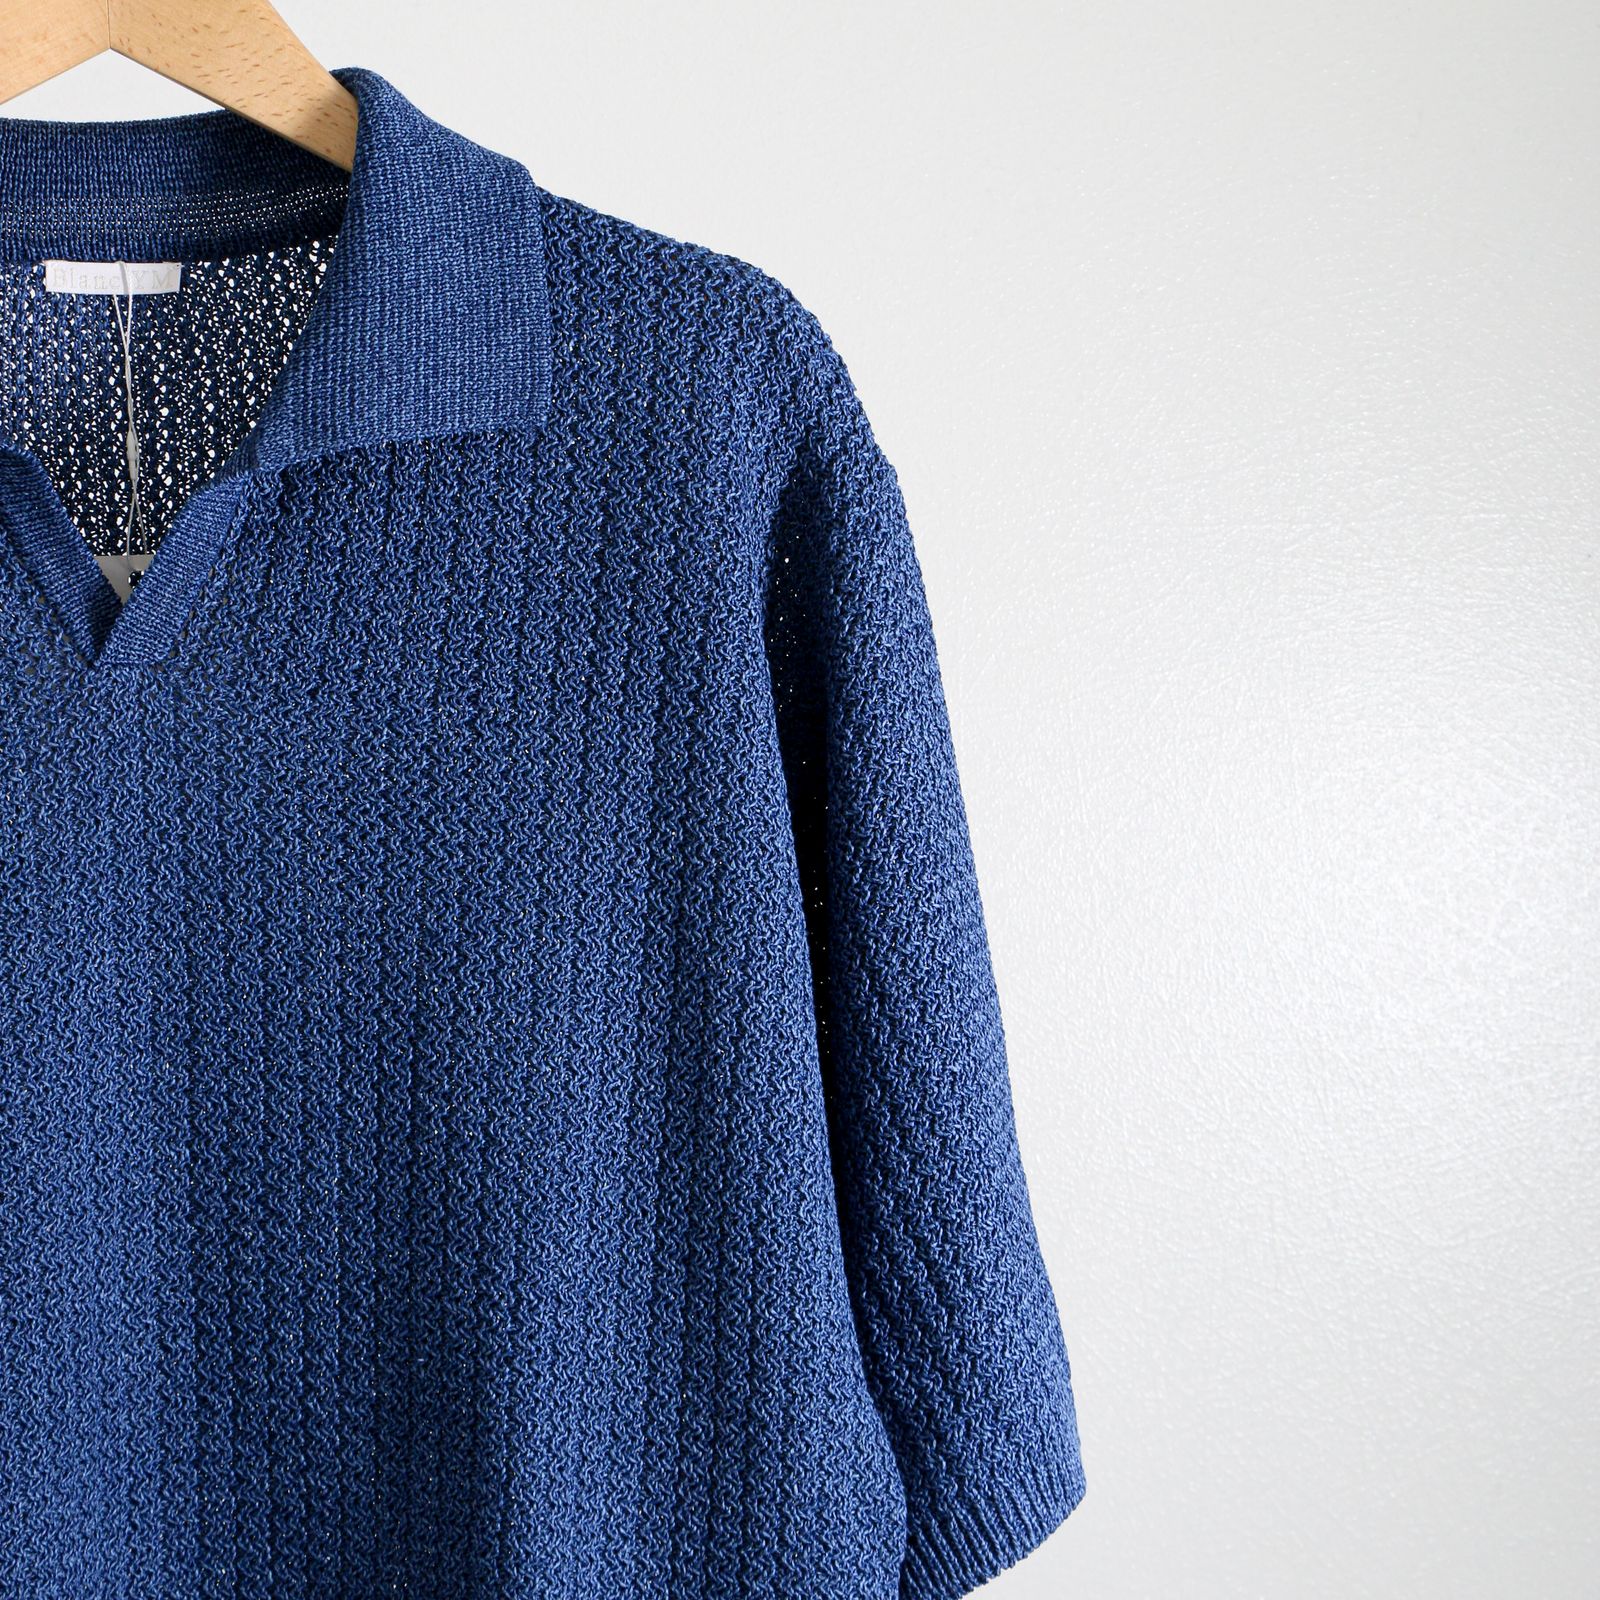 Skipper knit Shirt BLUE / スキッパー / ニットシャツ / コットン / 和紙素材 - S